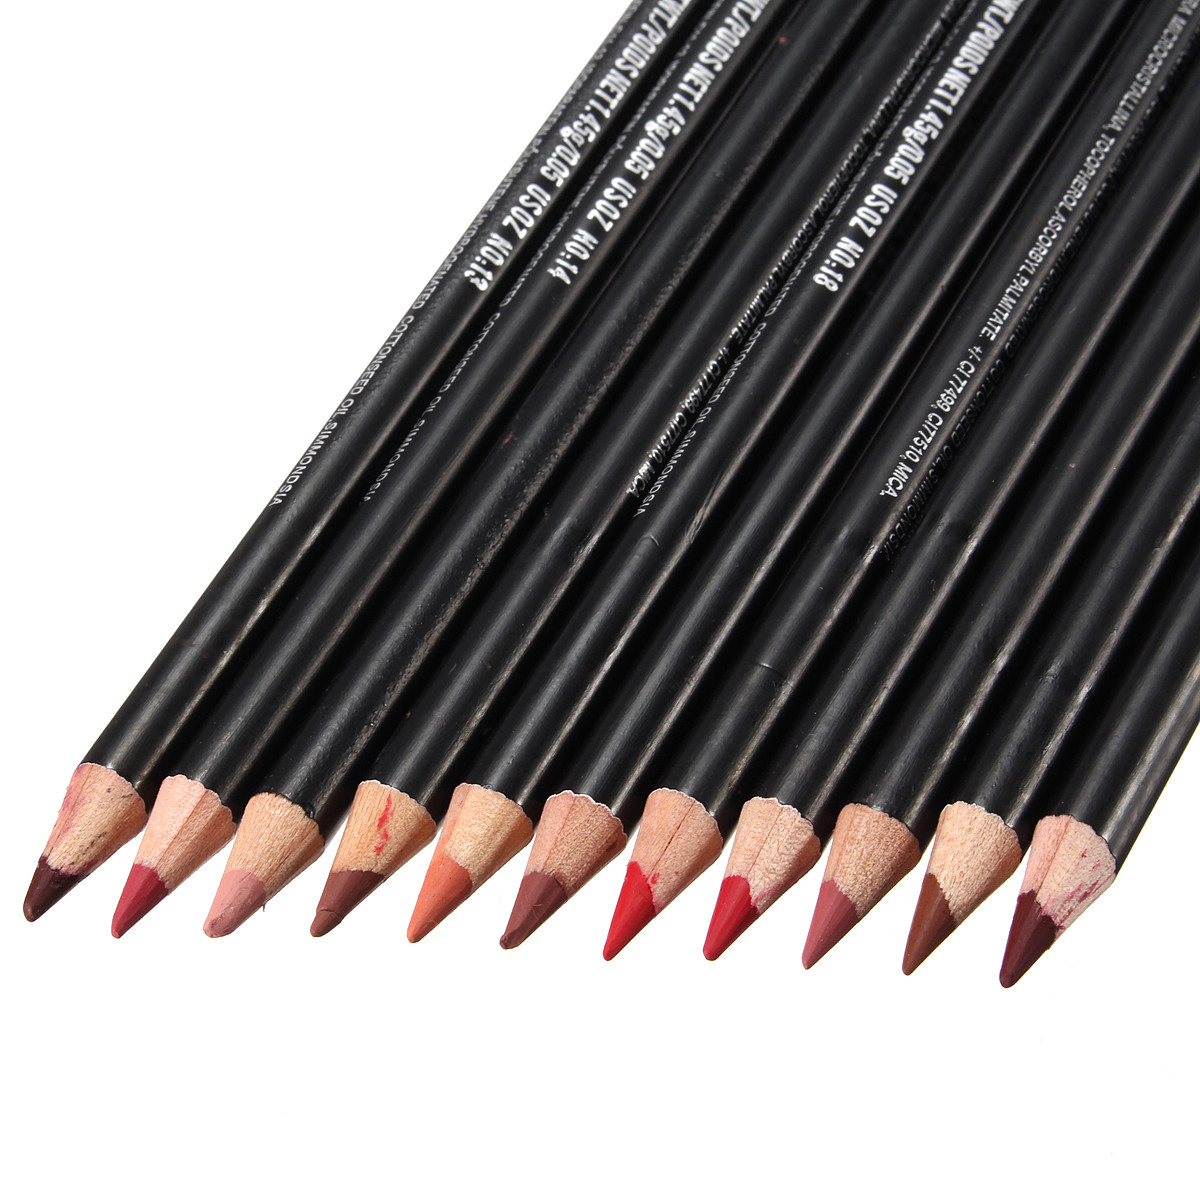 12 Colors Lip Liner Makeup Pencil Long Lasting Natural Waterproof Cosmetic Pen  